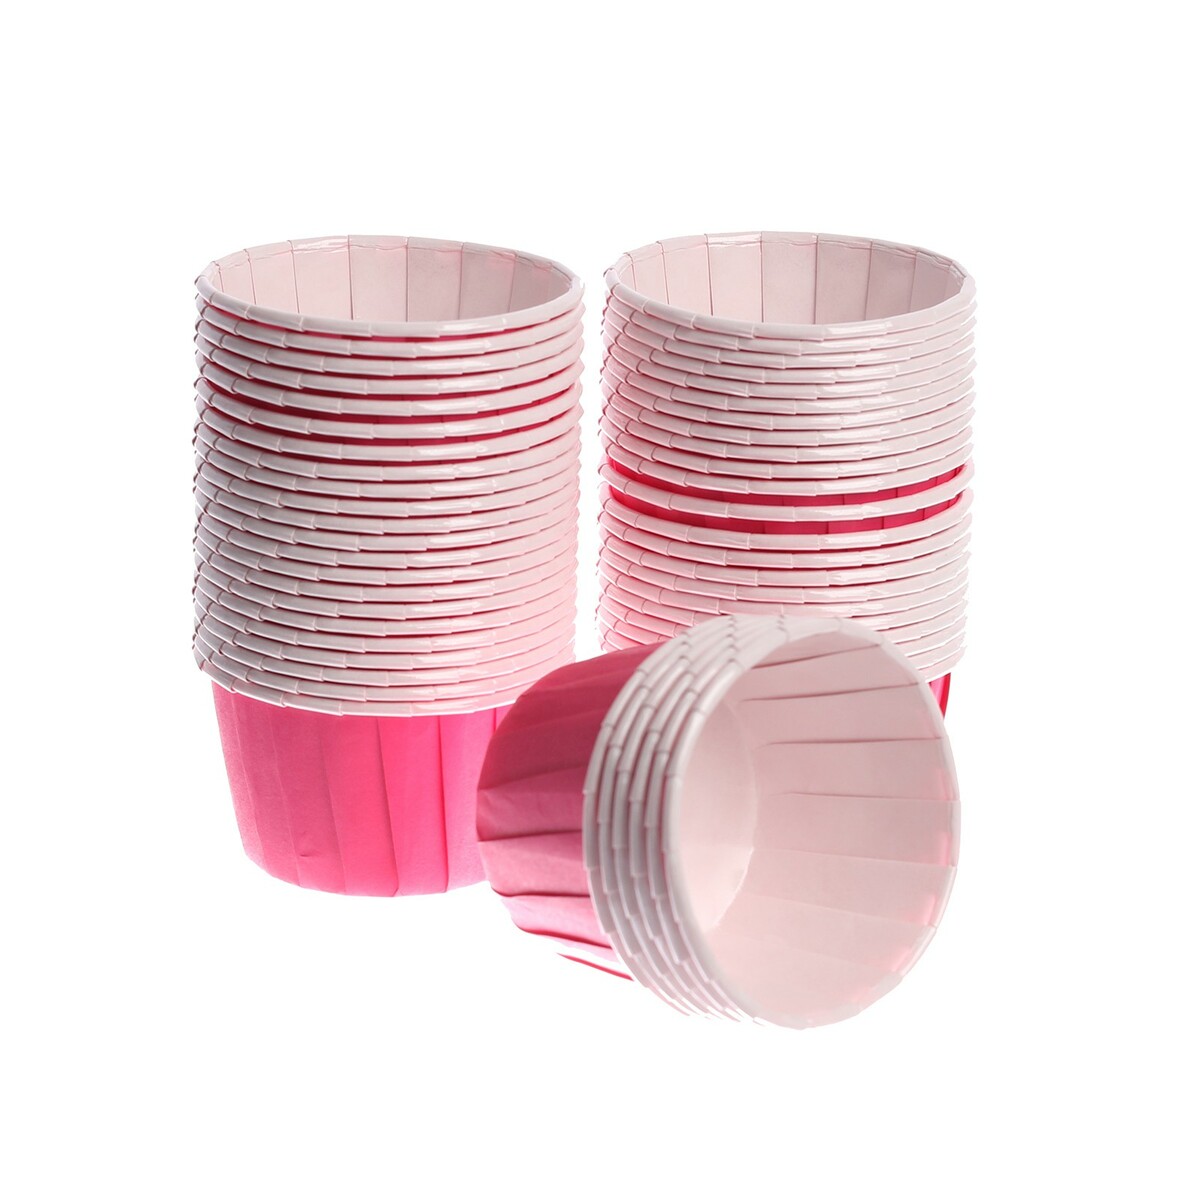 Тарталетка для кексов, набор, 50 шт., цвет розовый набор бумажных форм для кексов розы на голубом фоне диаметр дна 5 см 50 шт